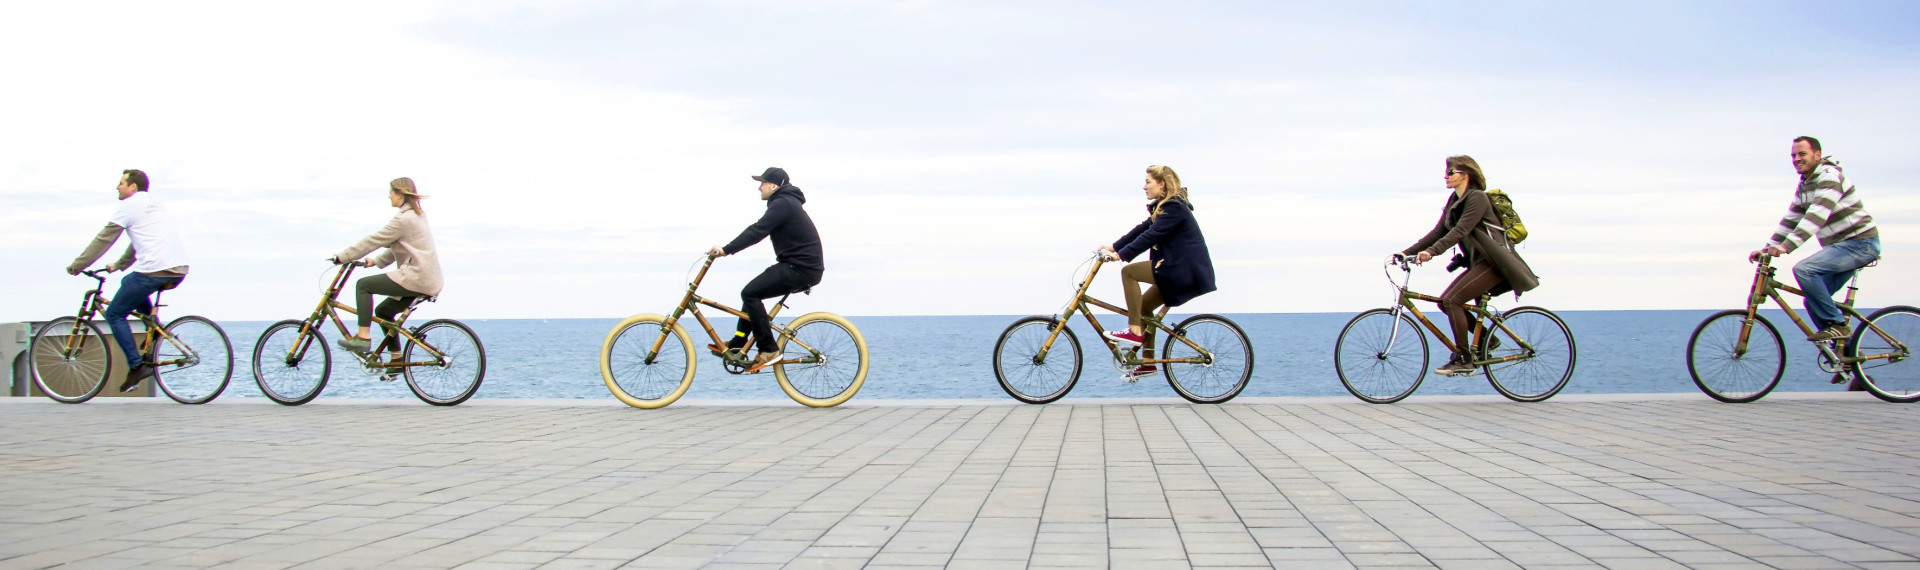 Tour de Vélo en Bambou à Barcelone | Votre excursion en 1 clic - EVG.fr